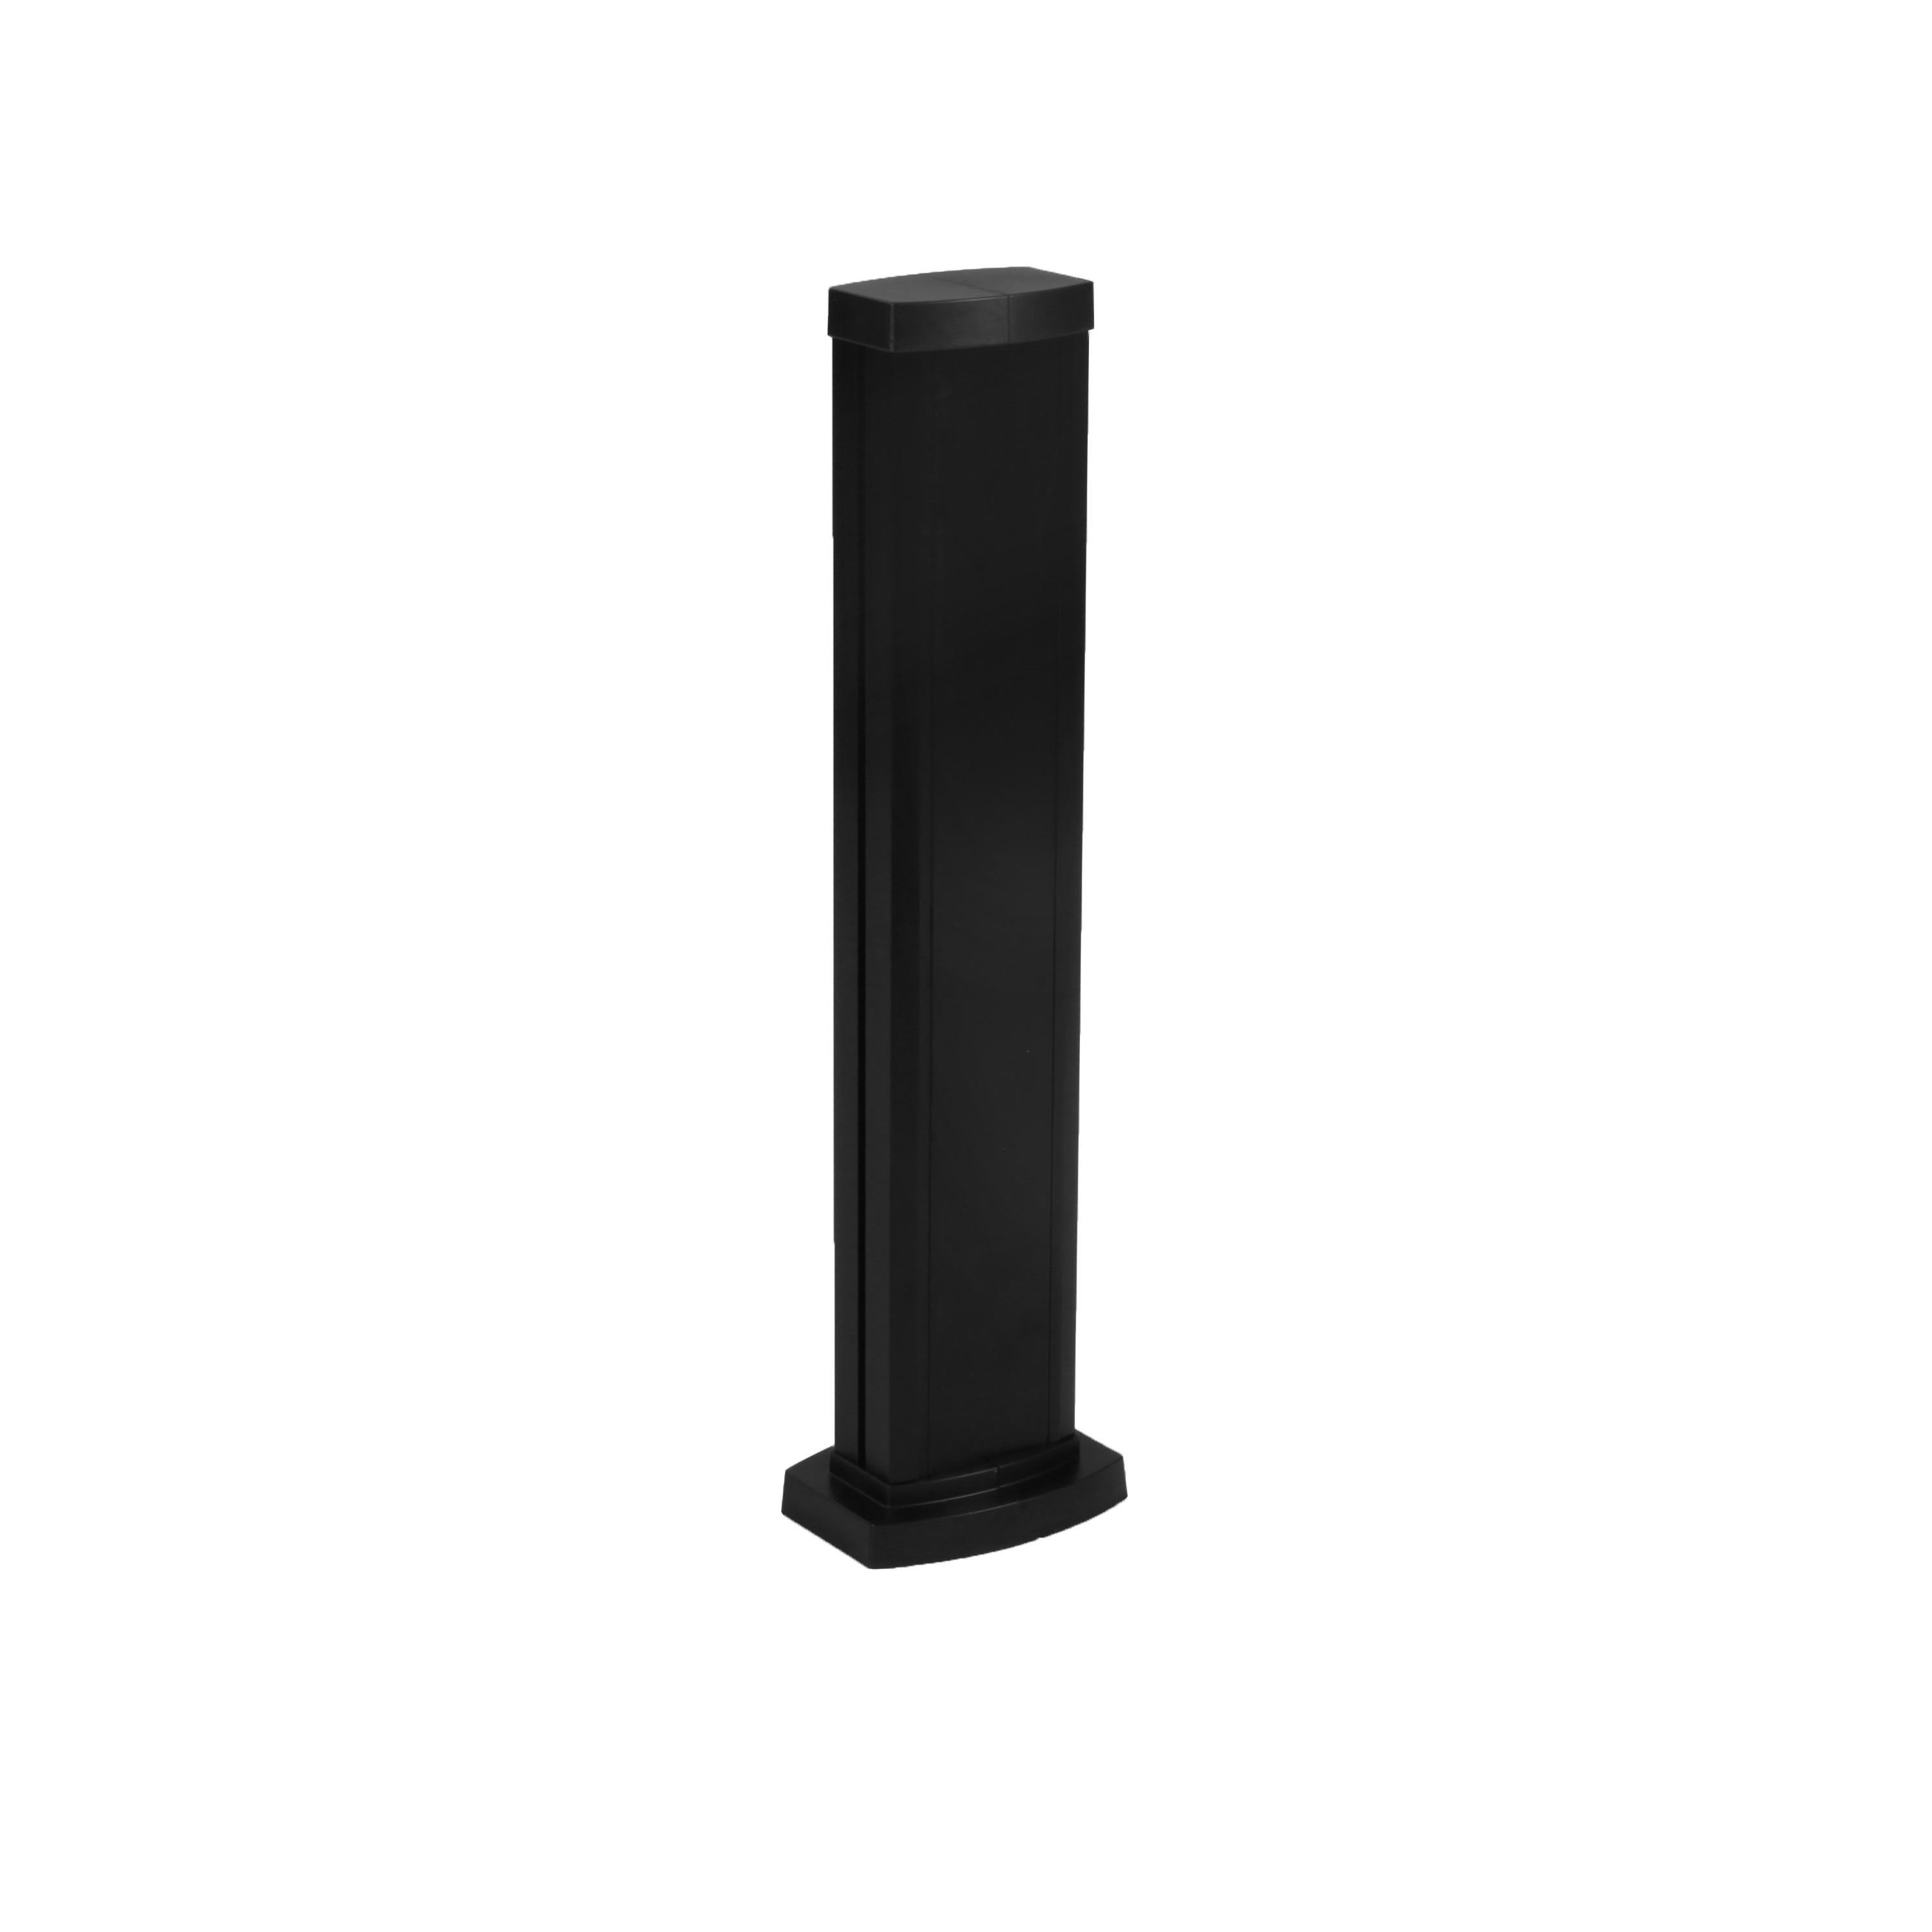 Универсальная мини-колонна алюминиевая с крышкой из алюминия 1 секция, высота 0,68 метра, цвет черный 653105 Legrand